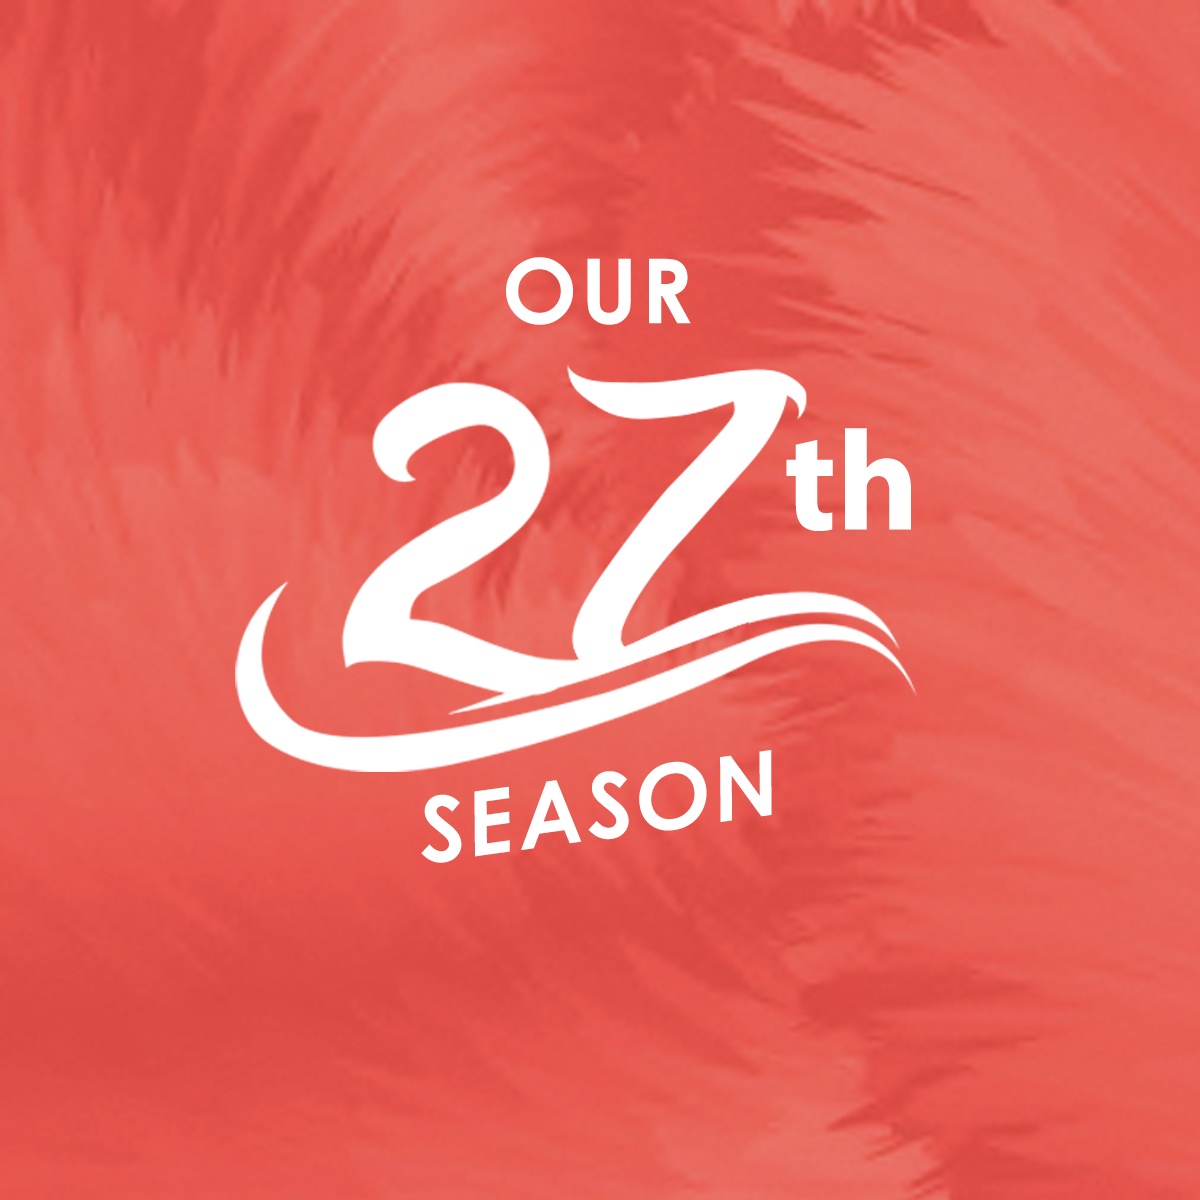 Our 27th Season